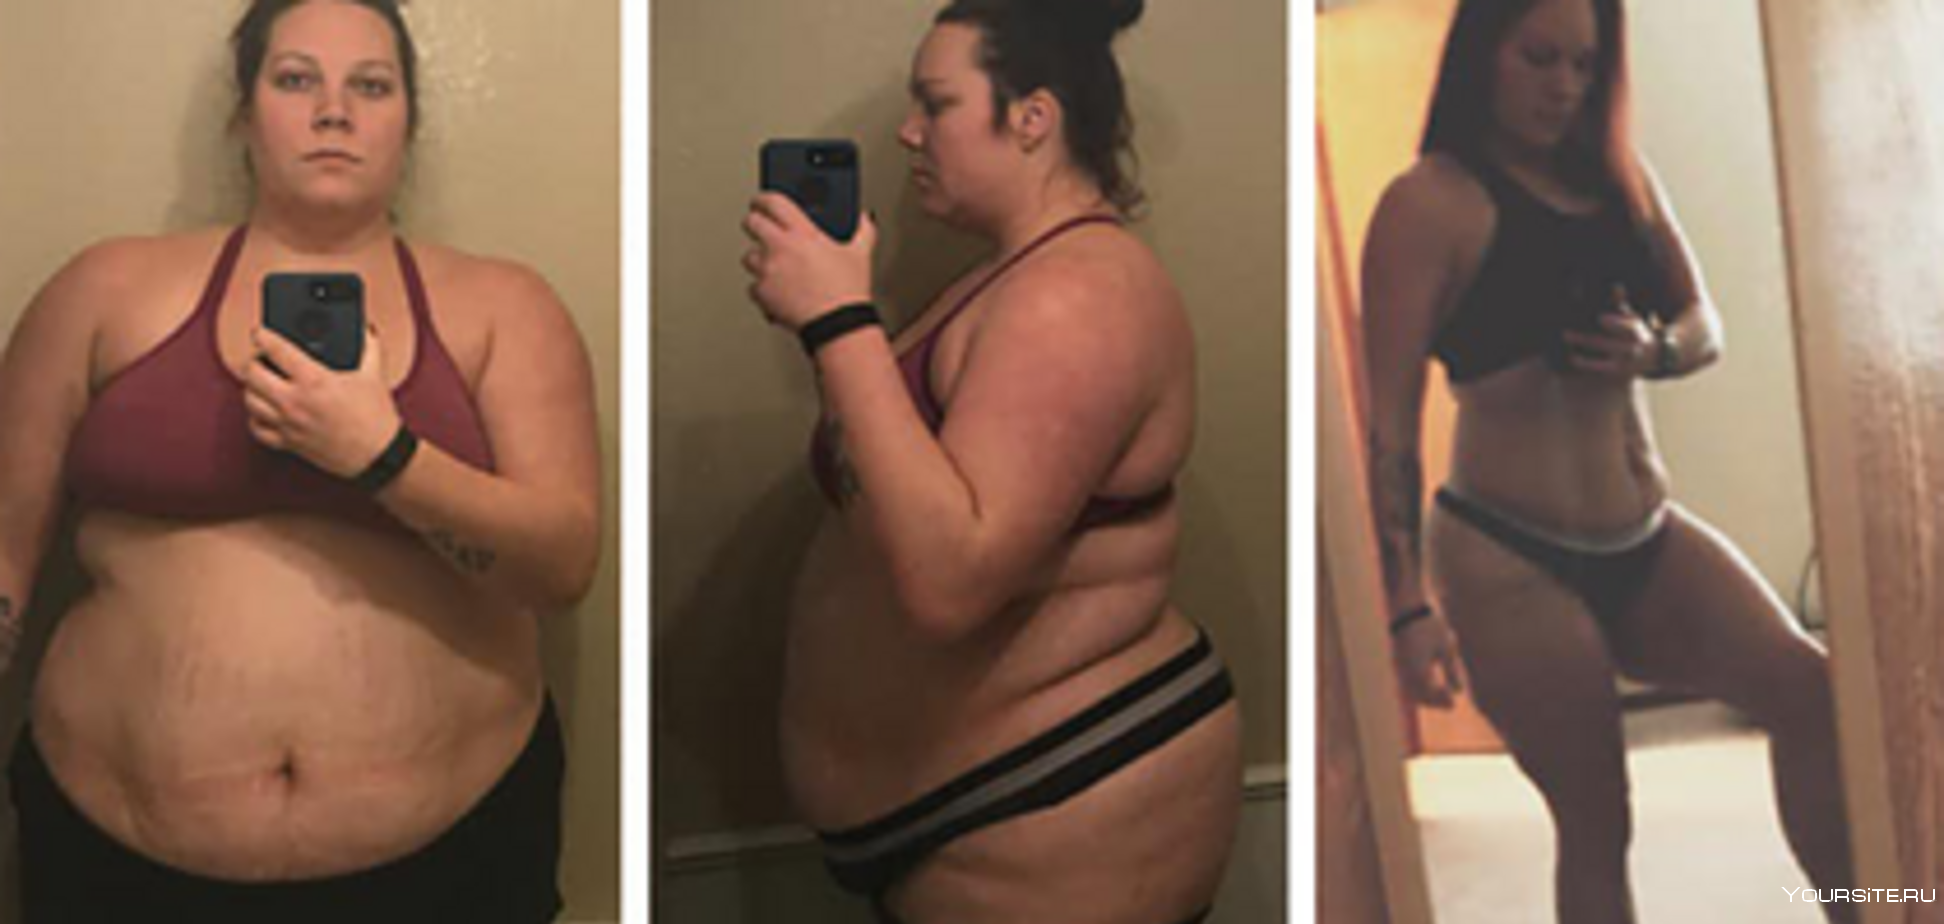 Была толстой потом похудела. Похудение до и после. До и после похудения девушки. Похудение до и после фото. Девушка худеет.